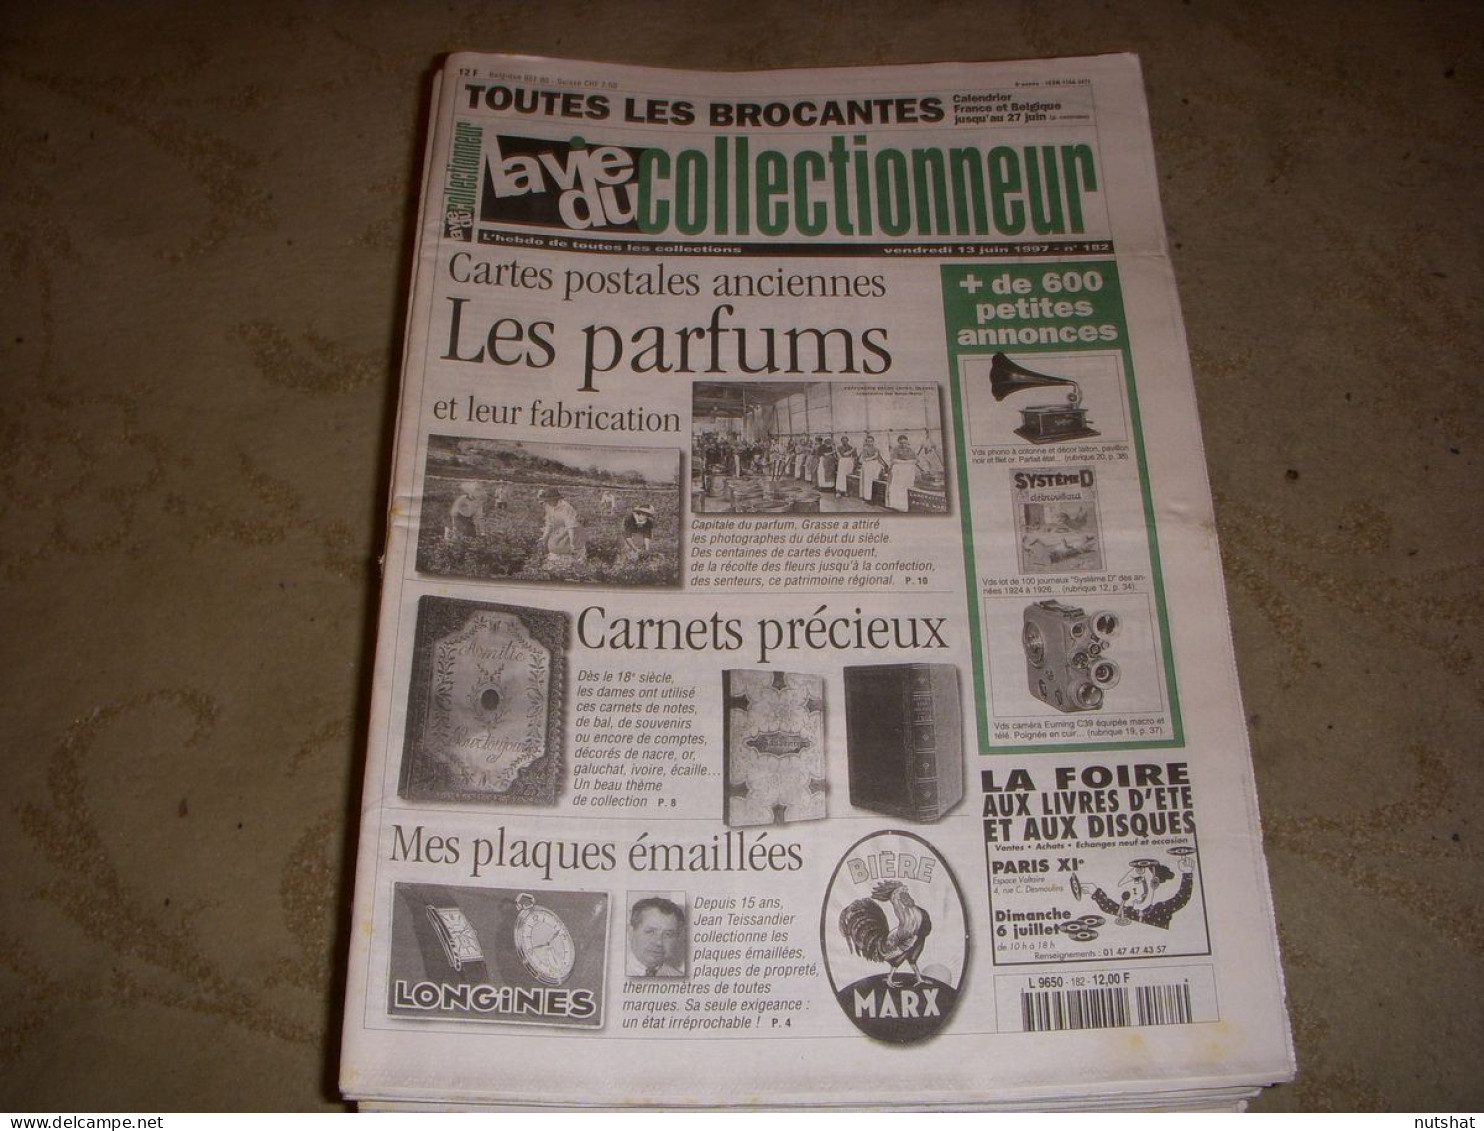 LVC VIE Du COLLECTIONNEUR 182 13.06.1997 PARFUM CARNET PRECIEUX PLAQUE EMAILL  - Collectors